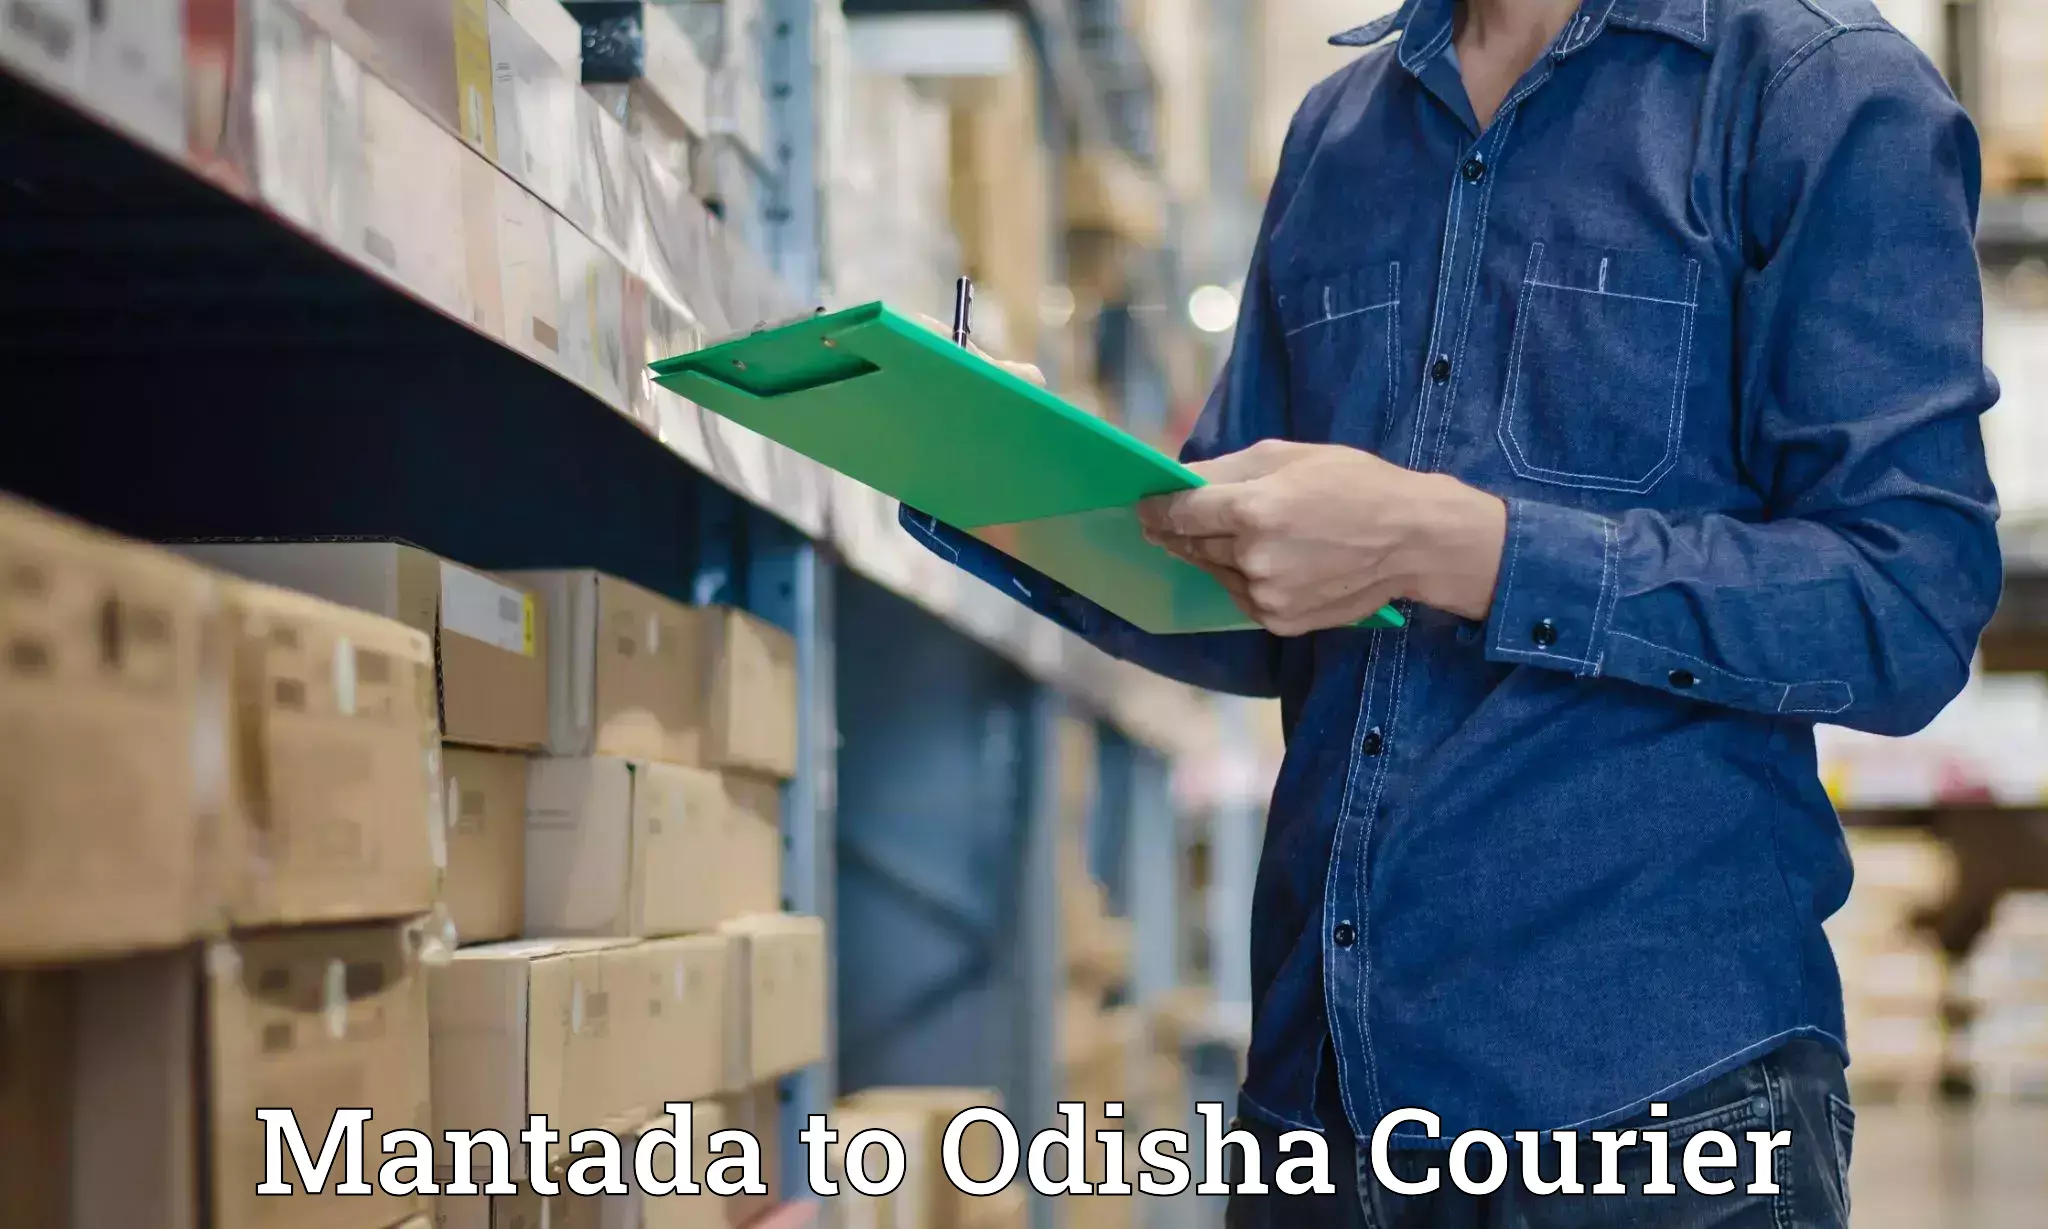 Courier app Mantada to Odisha